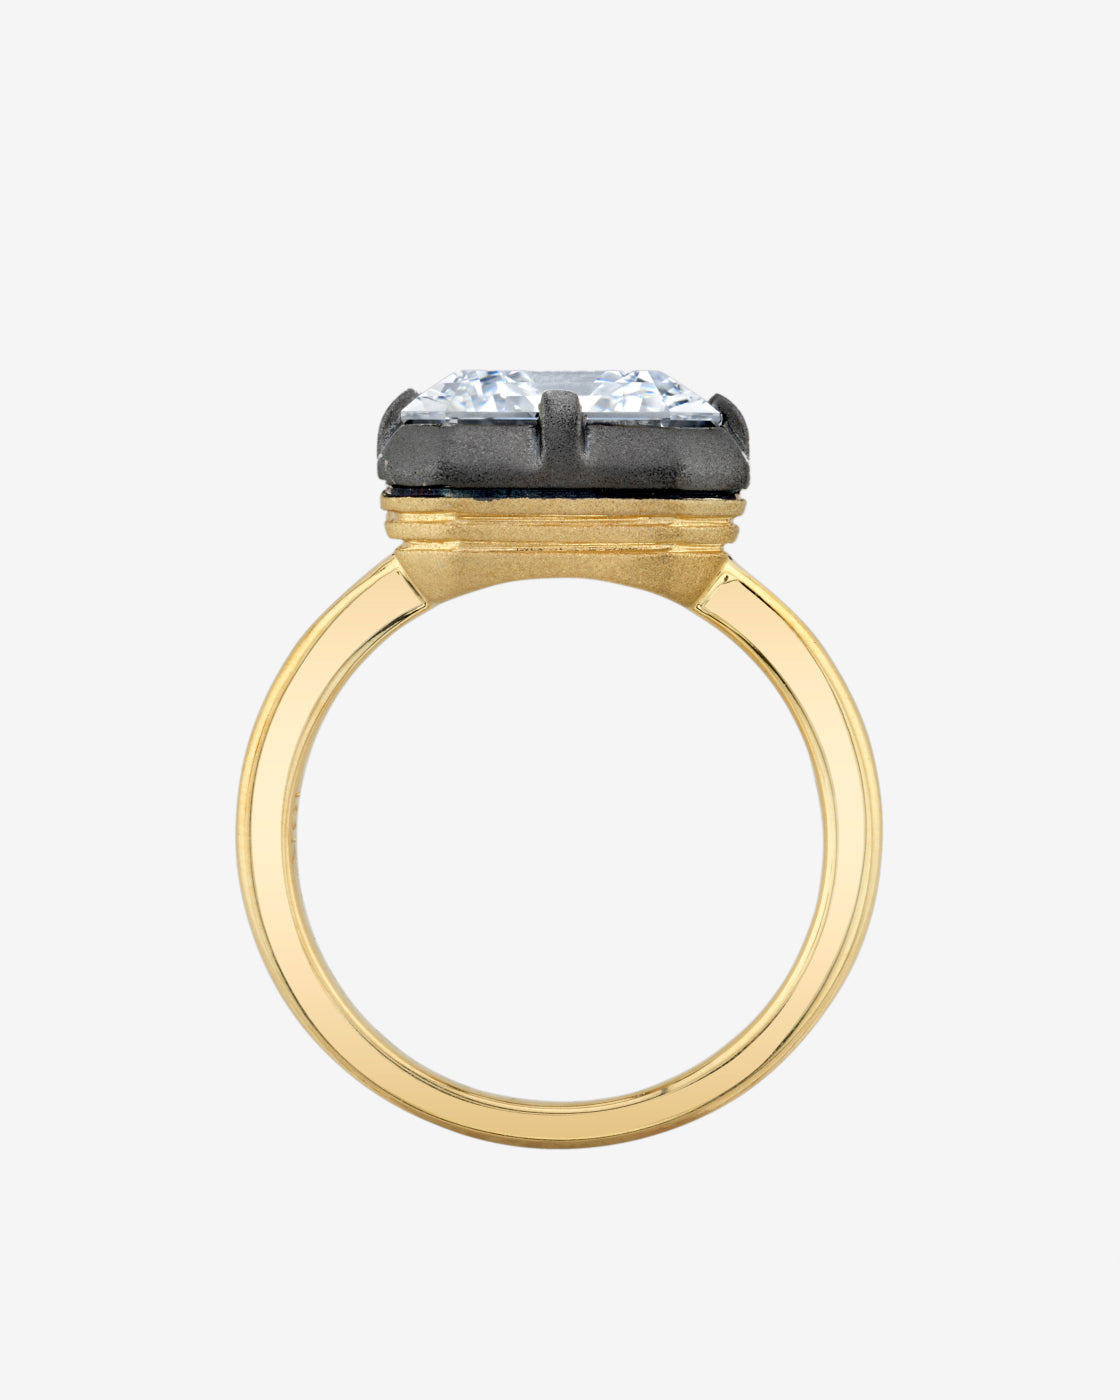 Solstice Emerald Cut Ring